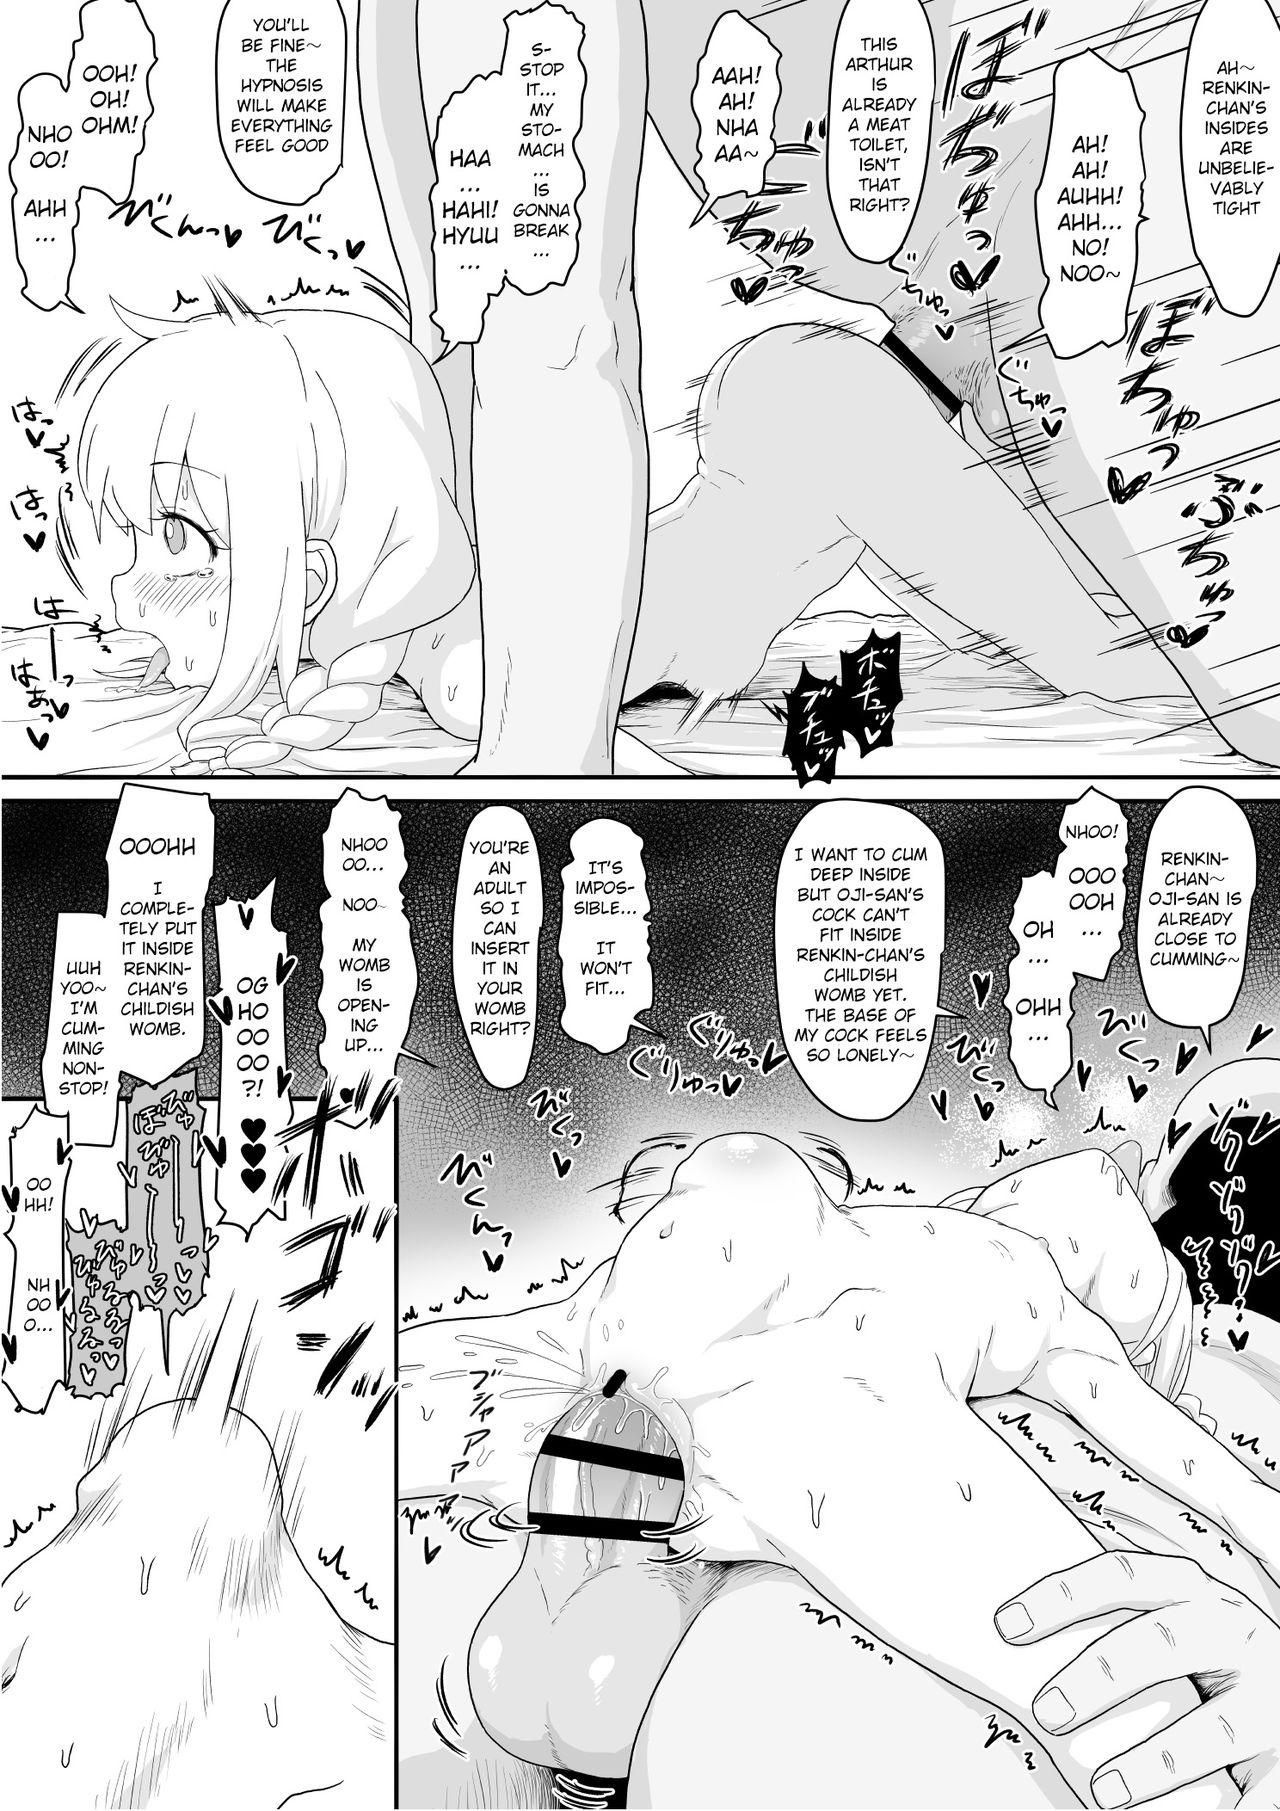 Renkin Arthur-chan 4 Page Manga 2